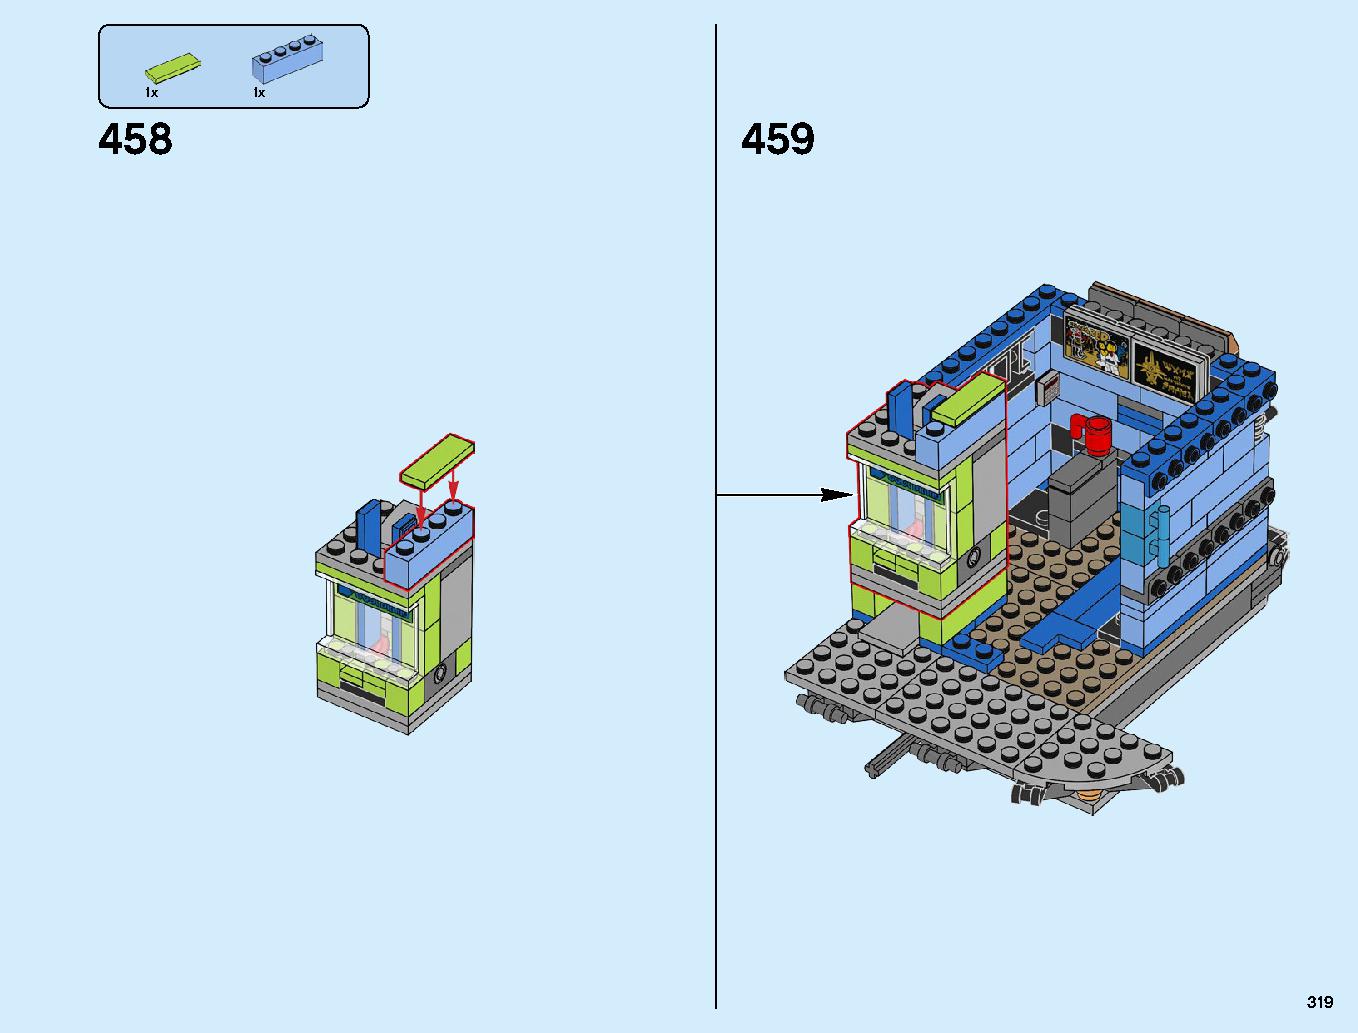 ニンジャゴーシティ・ポートパーク 70657 レゴの商品情報 レゴの説明書・組立方法 319 page